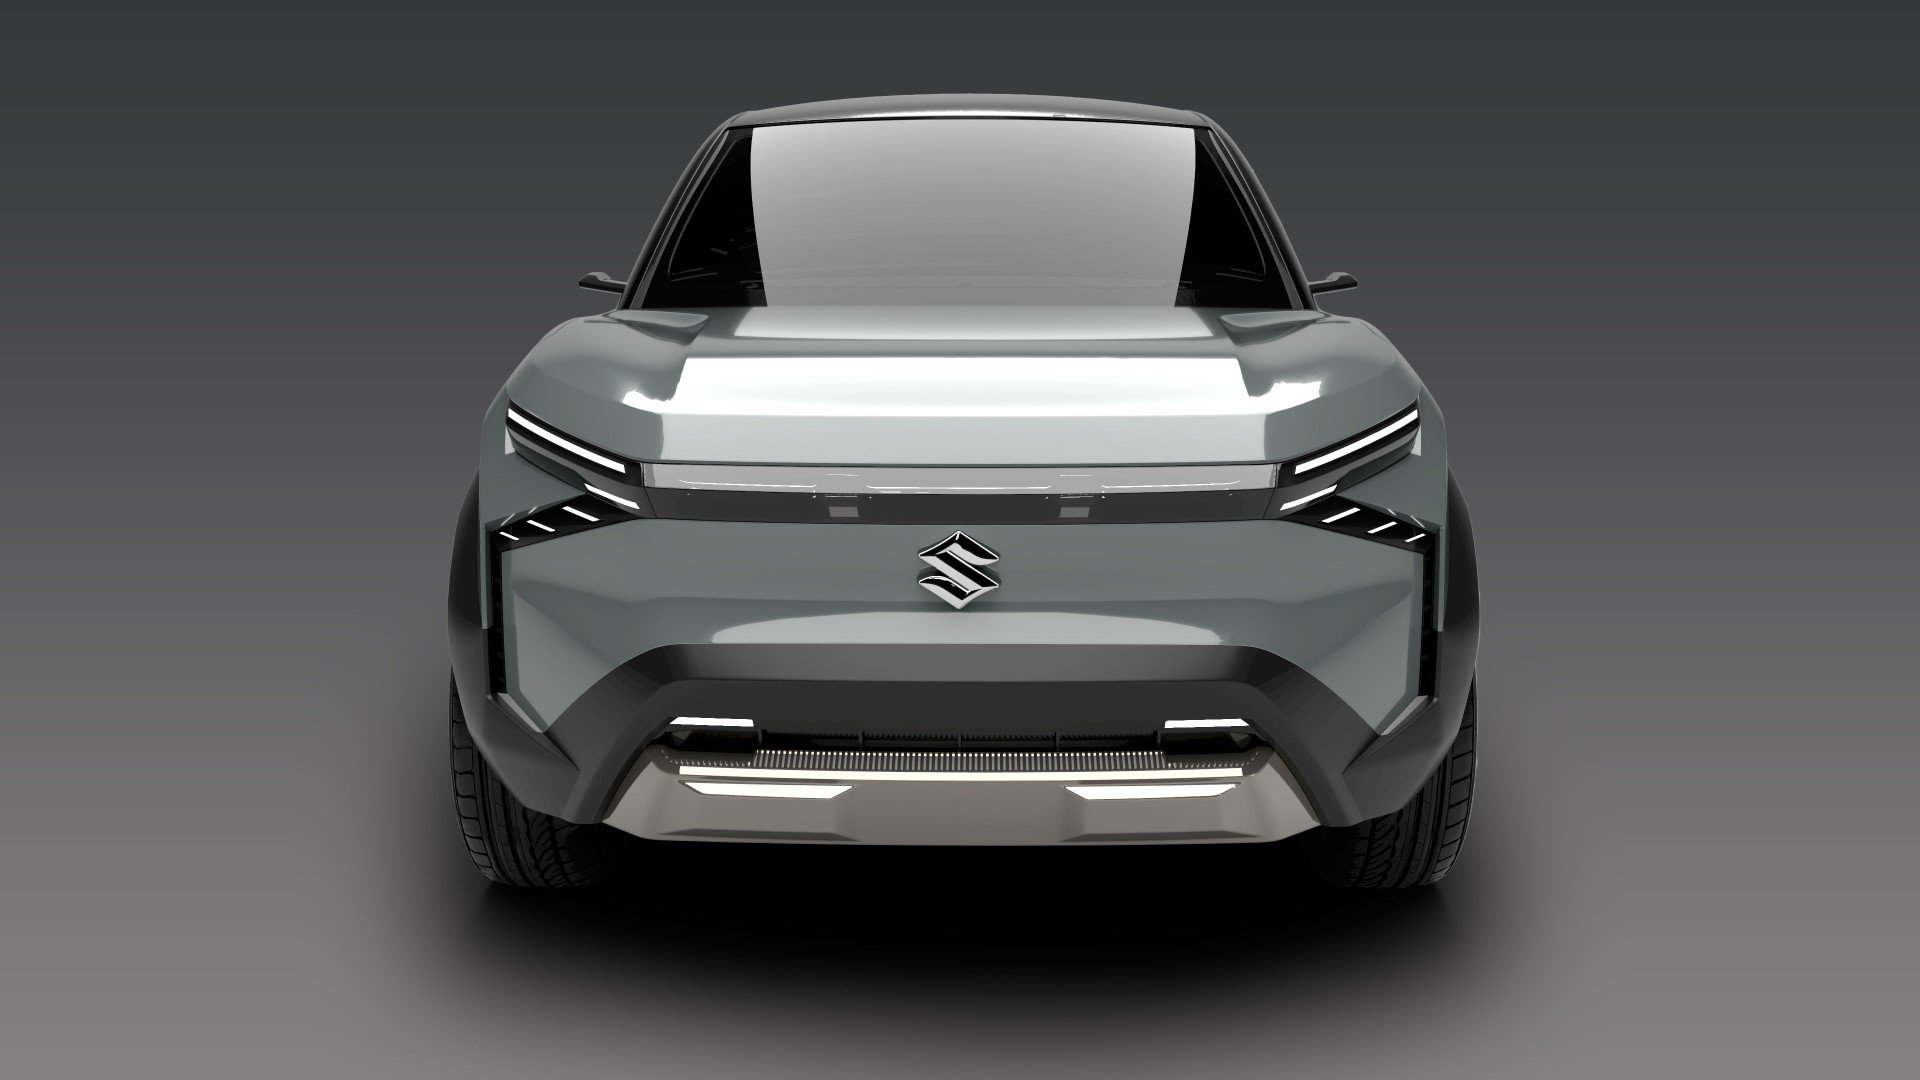 Σε δοκιμές εξέλιξης το νέο ηλεκτρικό SUV της Suzuki